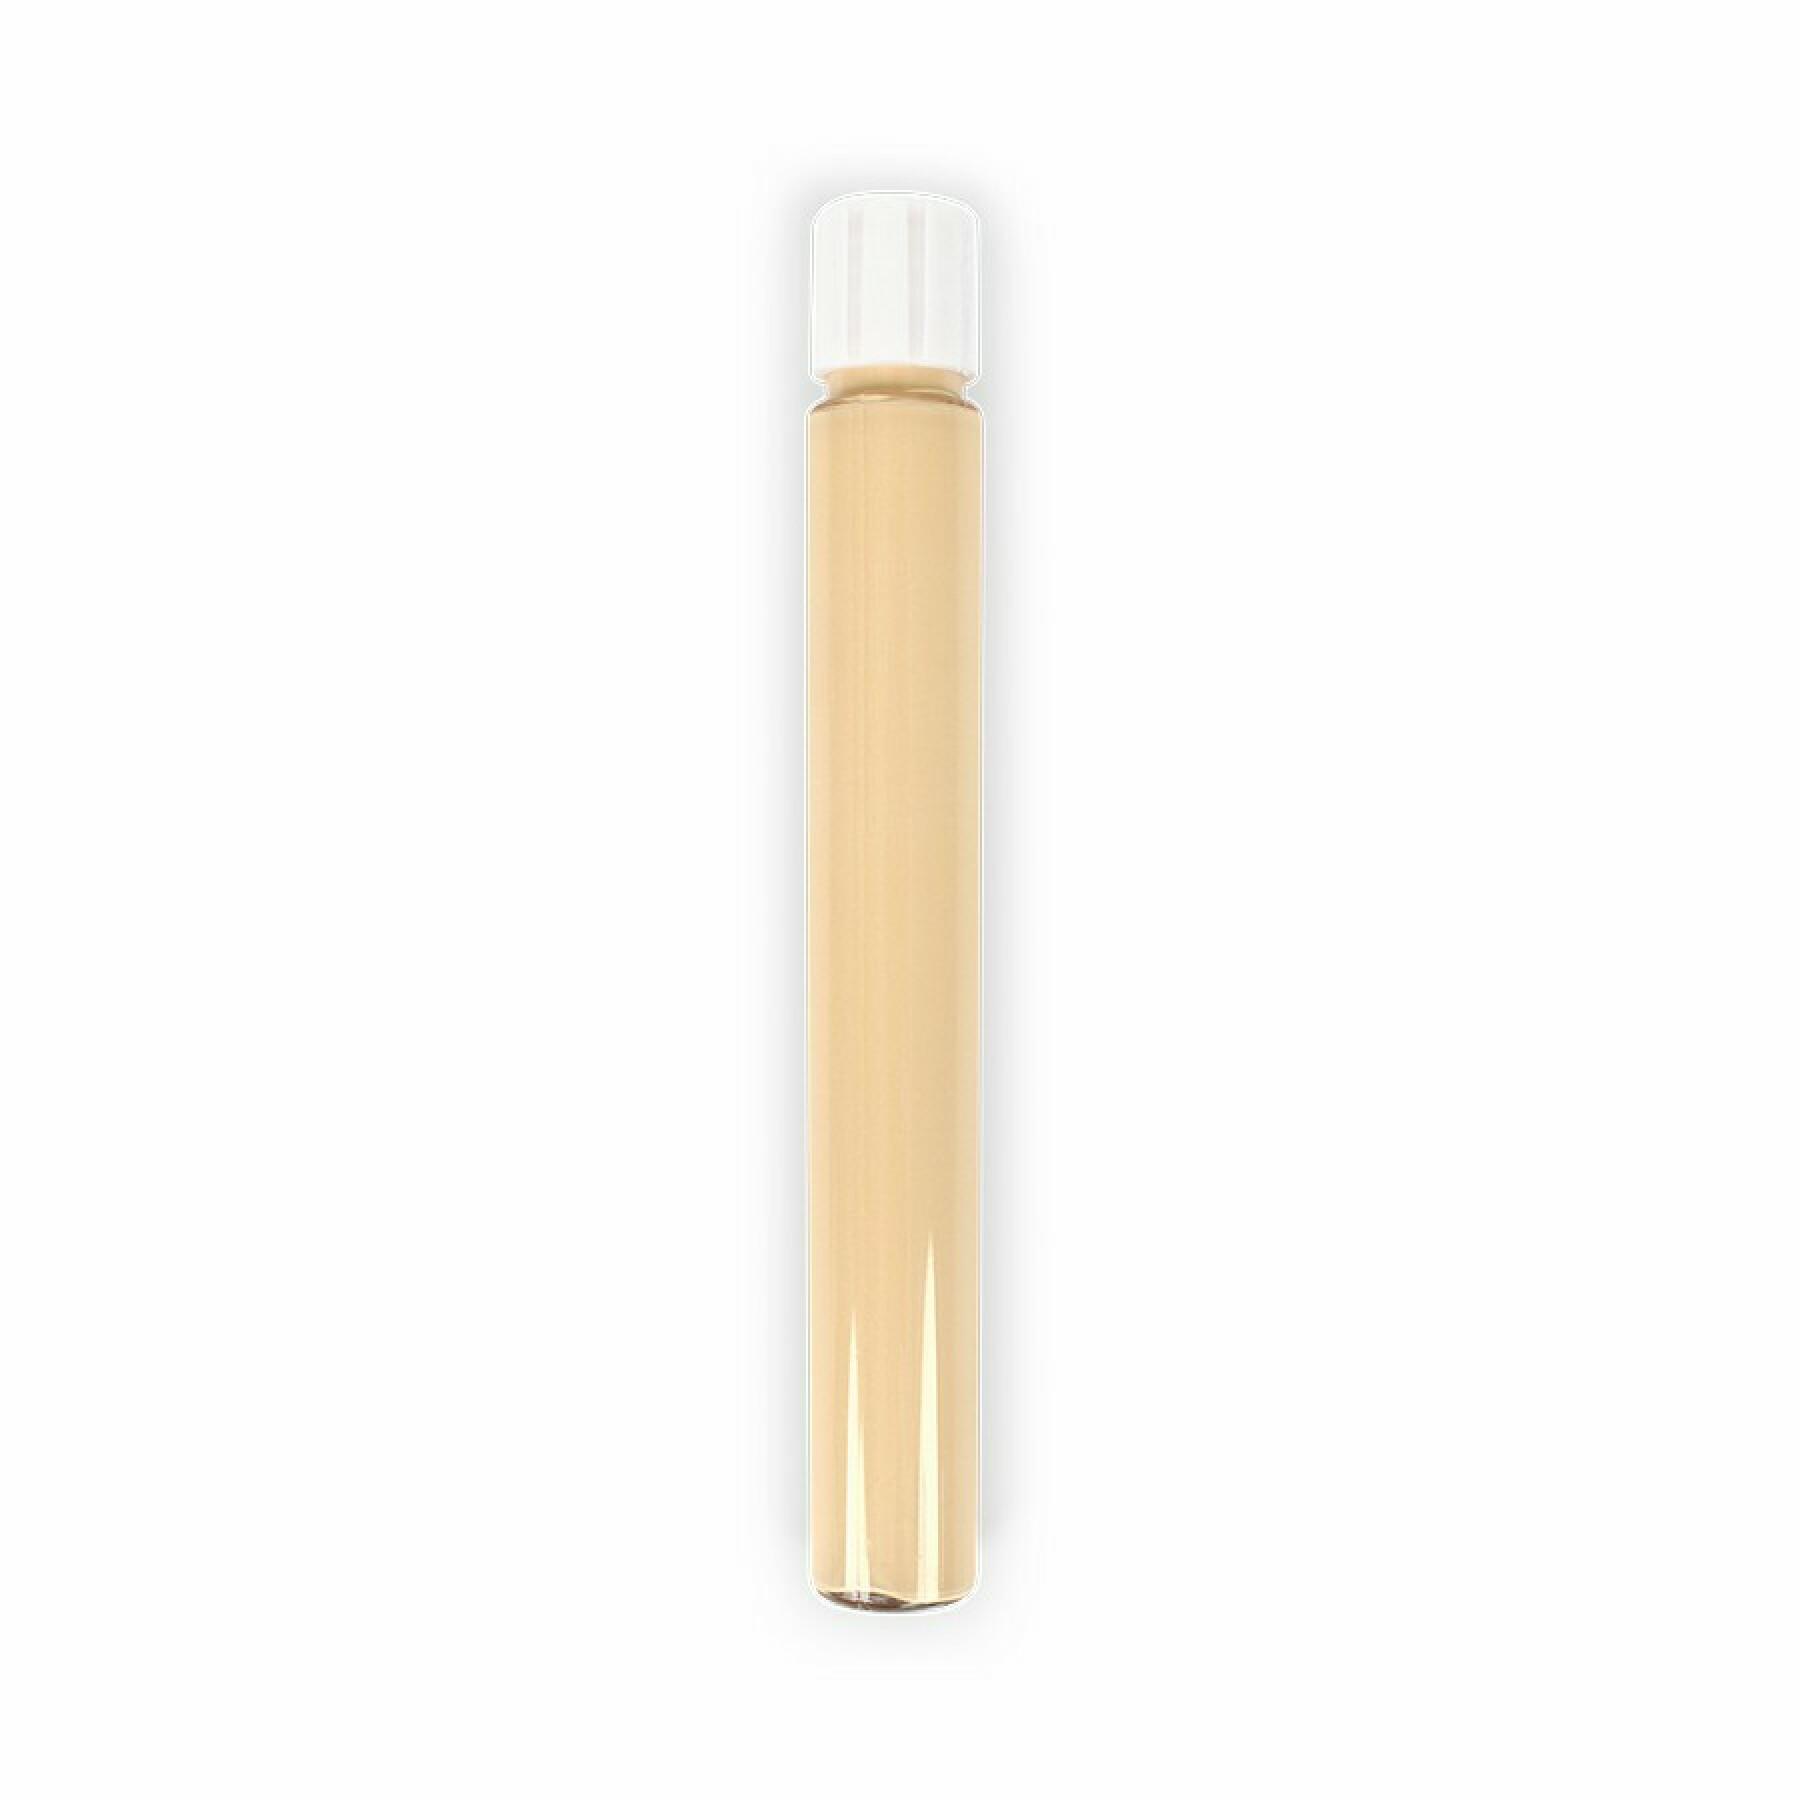 Ricarica correttore fluido beige porcellana donna 791 Zao - 7 ml